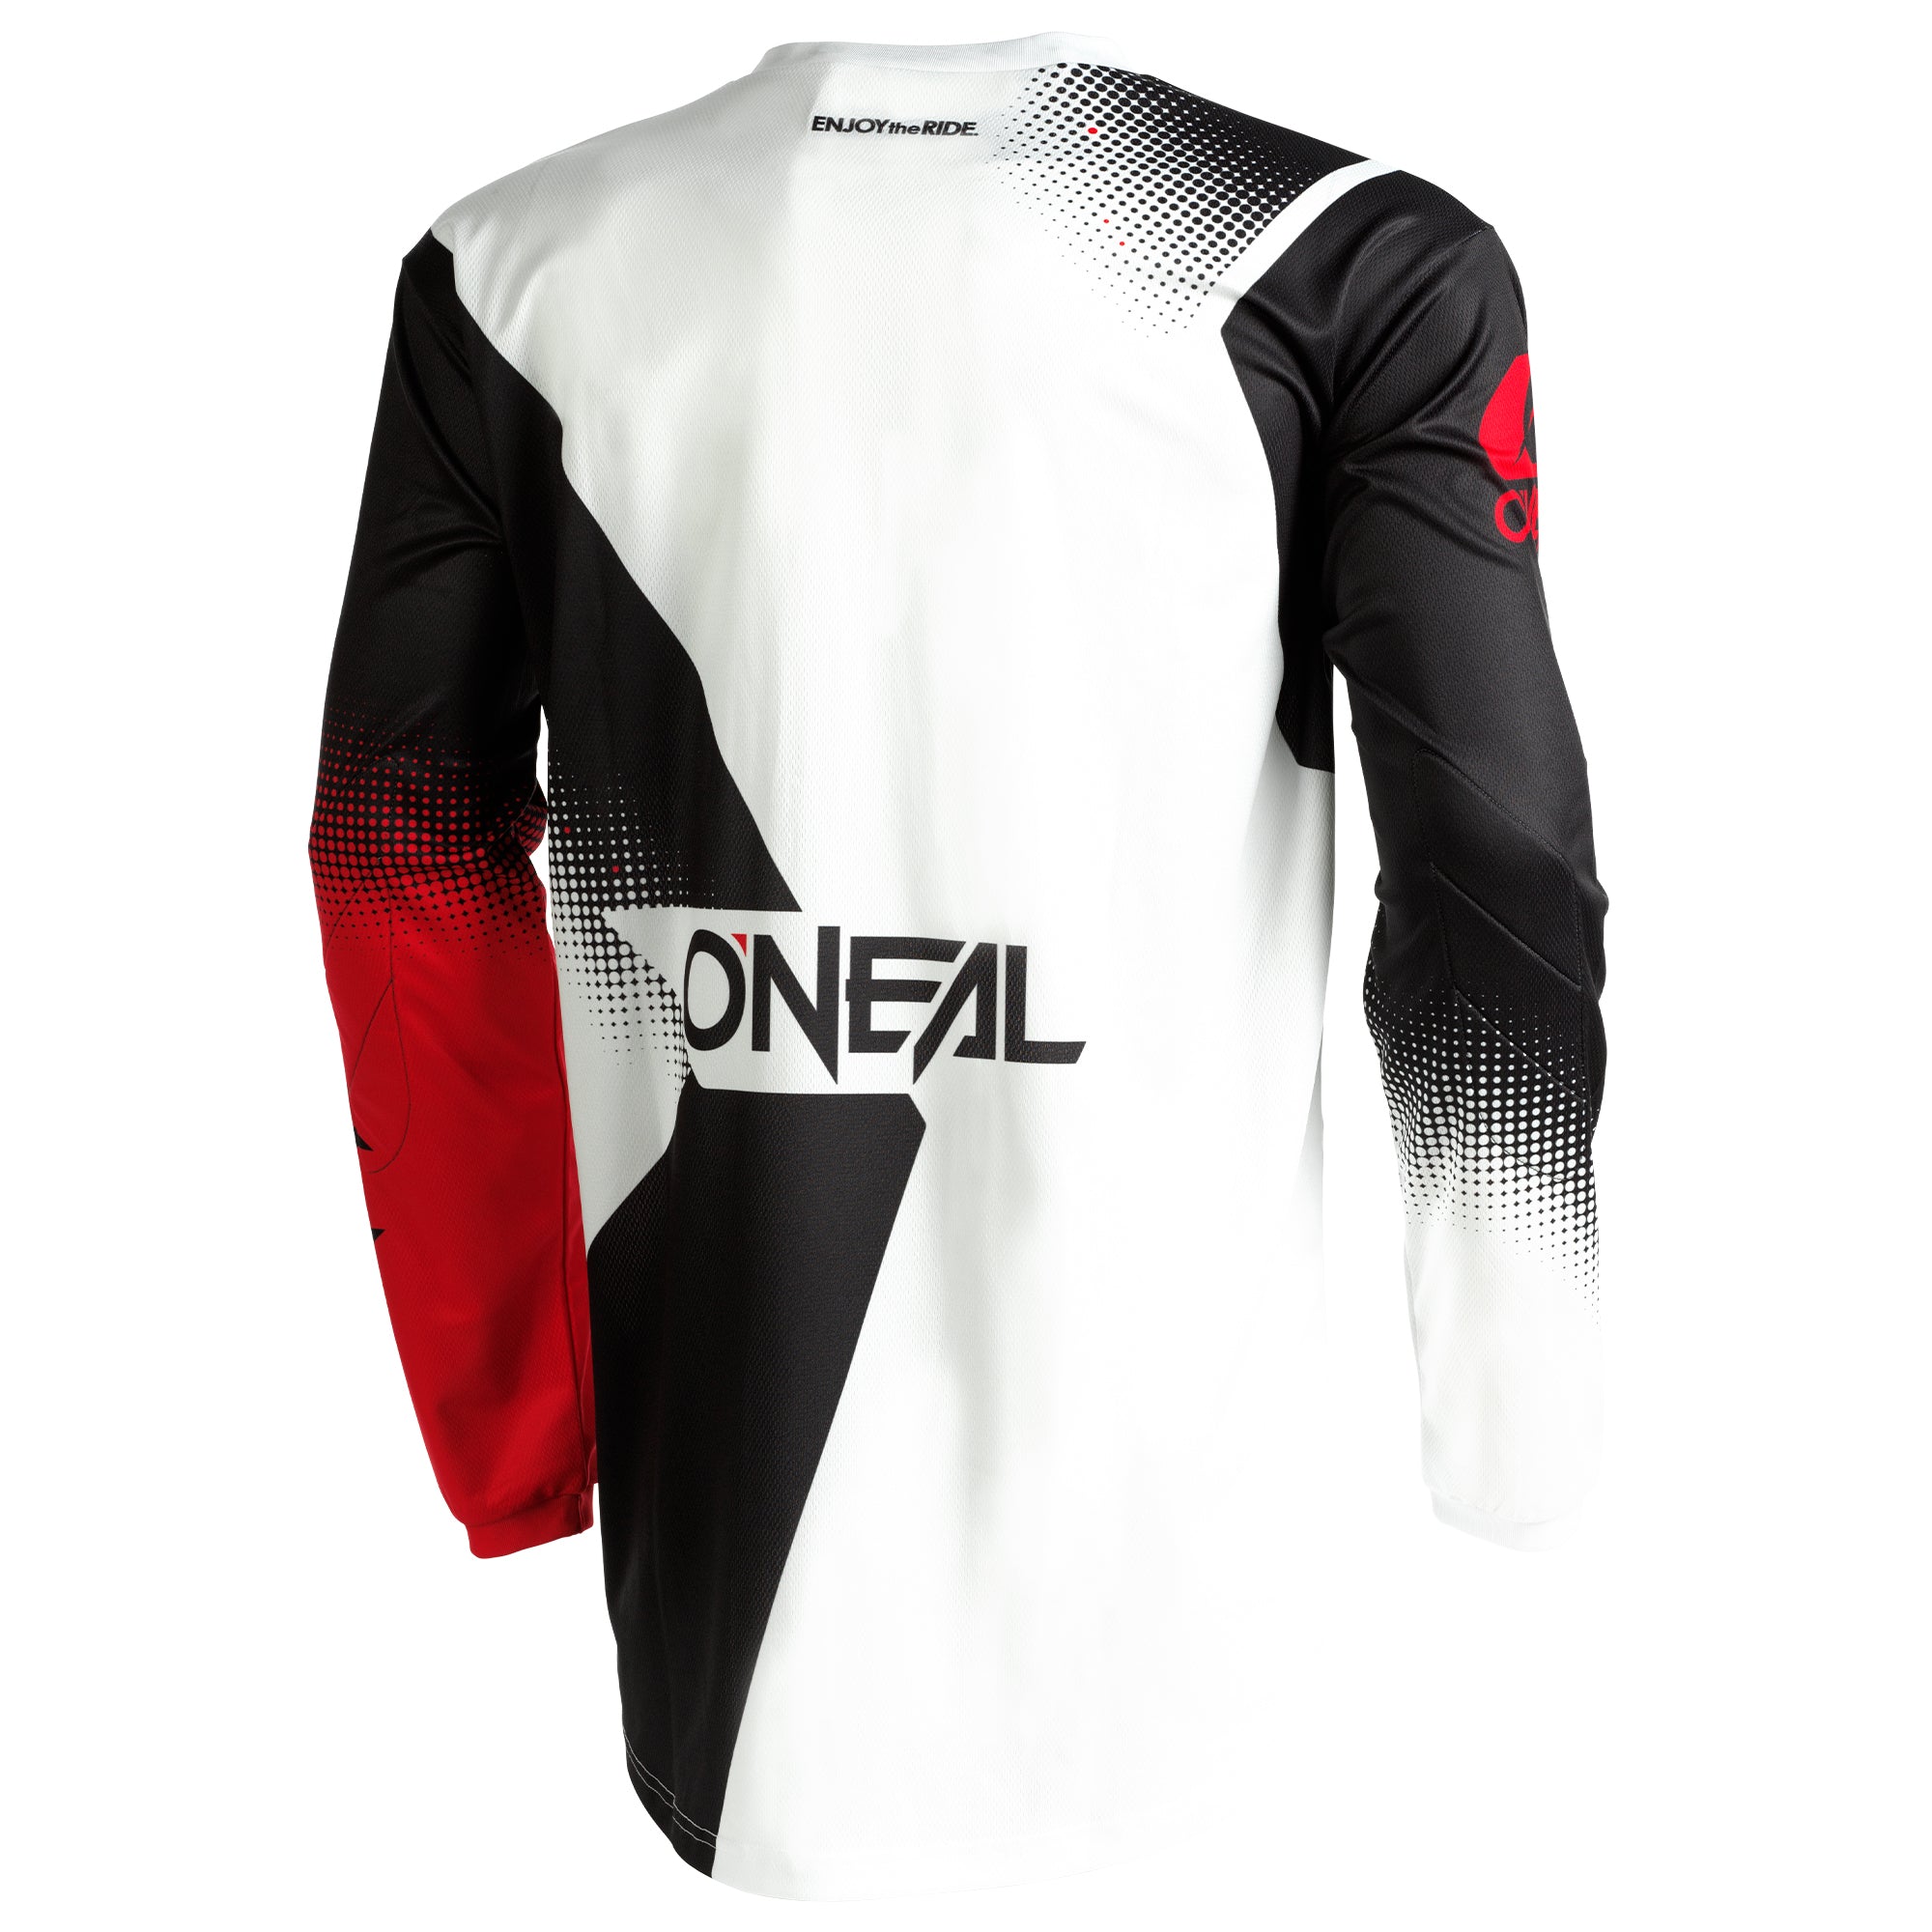 Eindig Is aan het huilen beweeglijkheid O'NEAL Element Racewear Jersey Black/White/Red – ONEAL USA